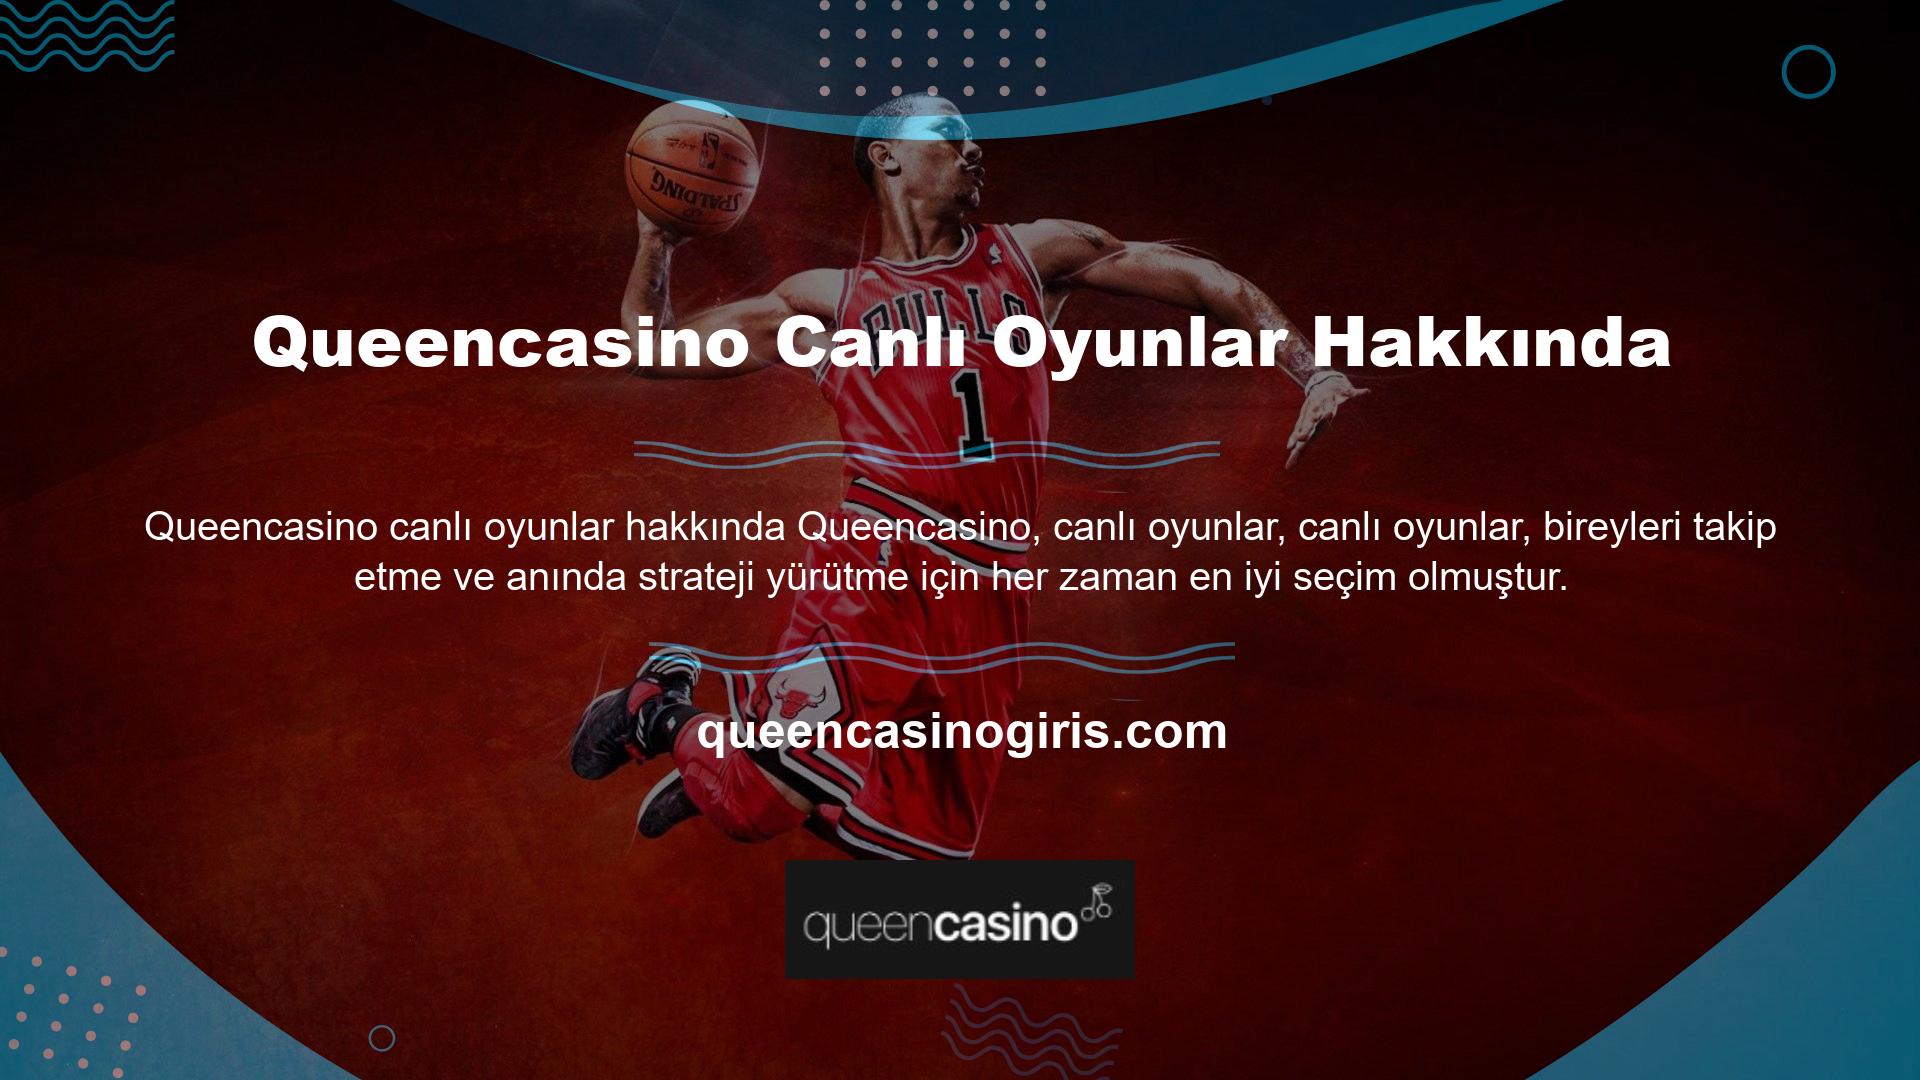 Queencasino sorunsuz bir bahis ve casino sitesidir